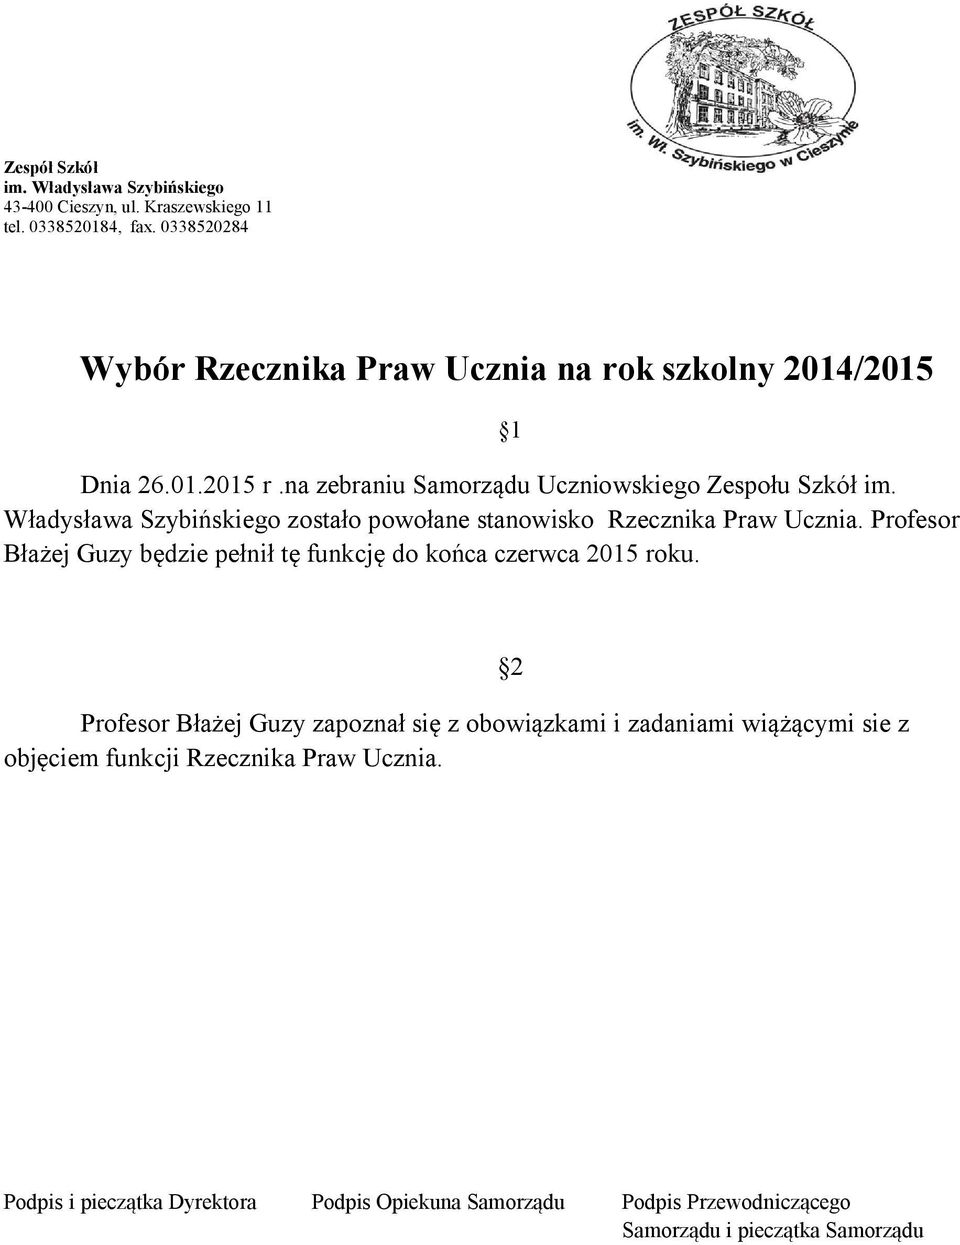 Władysława Szybińskiego zostało powołane stanowisko Rzecznika Praw Ucznia. Profesor Błażej Guzy będzie pełnił tę funkcję do końca czerwca 2015 roku.